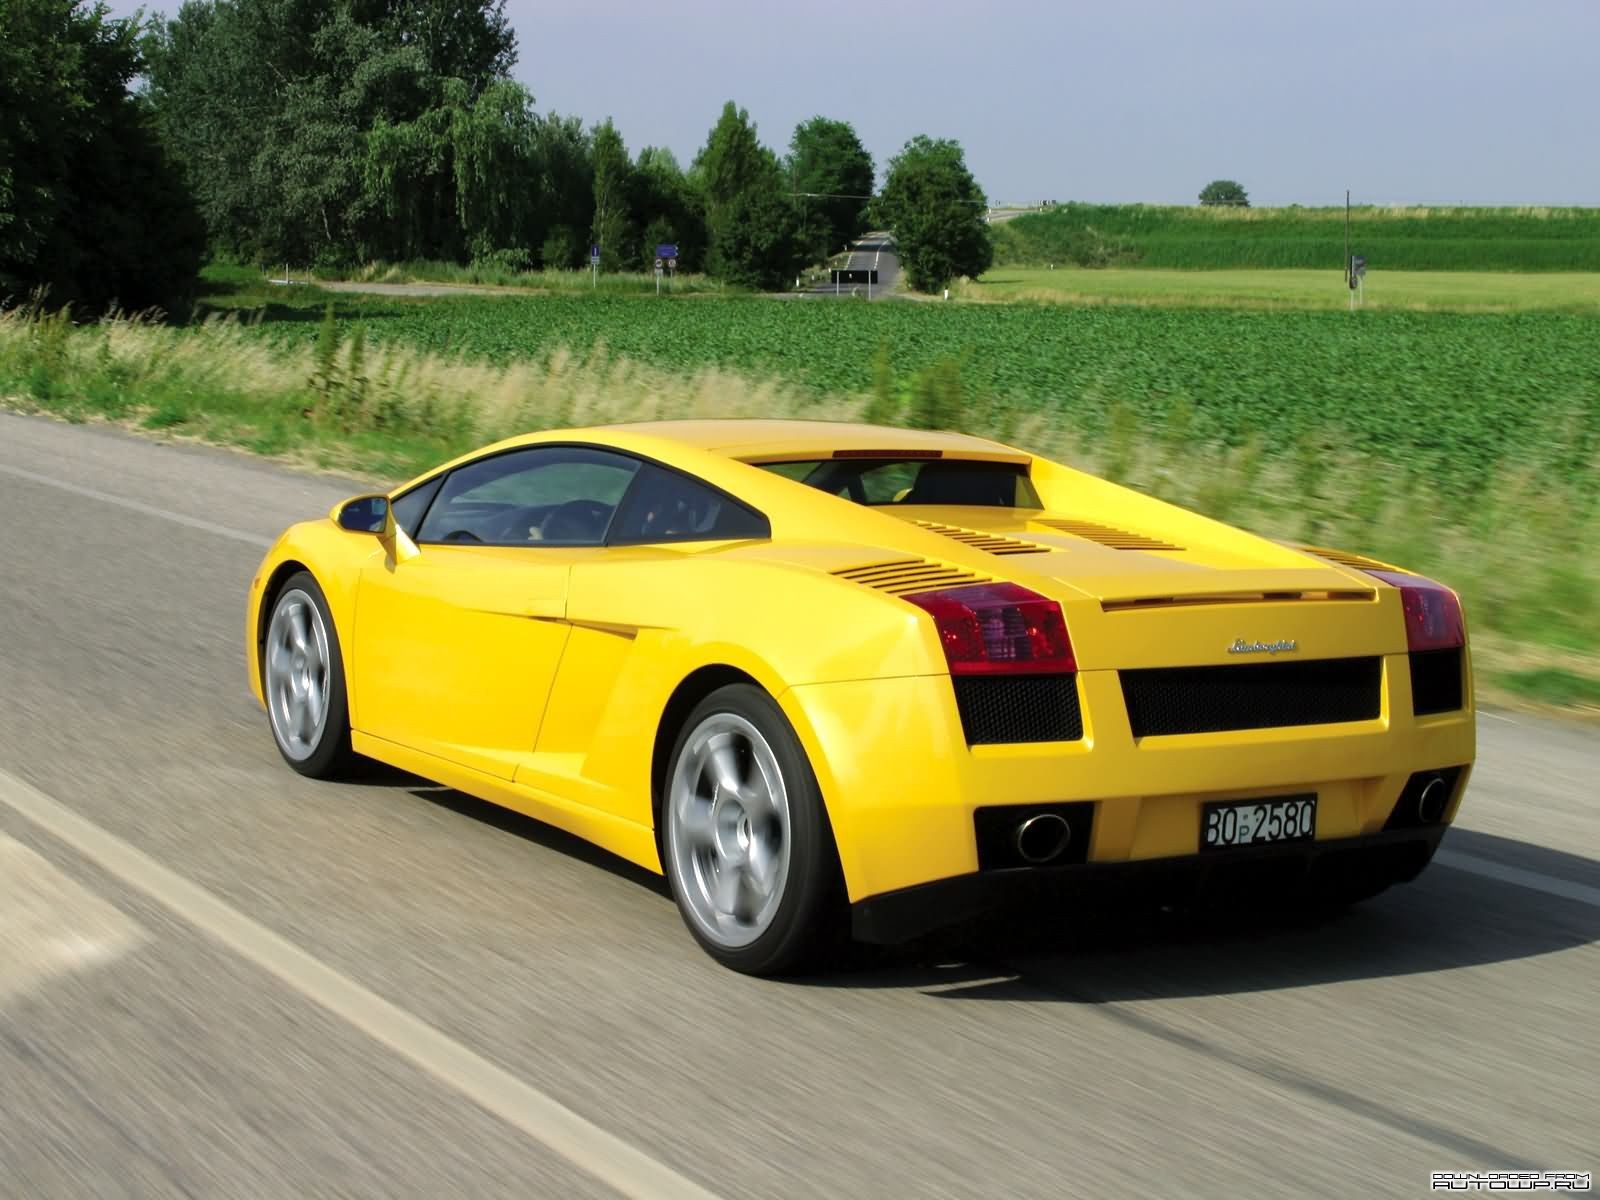 General 1600x1200 car yellow cars numbers Lamborghini vehicle asphalt Lamborghini Gallardo italian cars Volkswagen Group